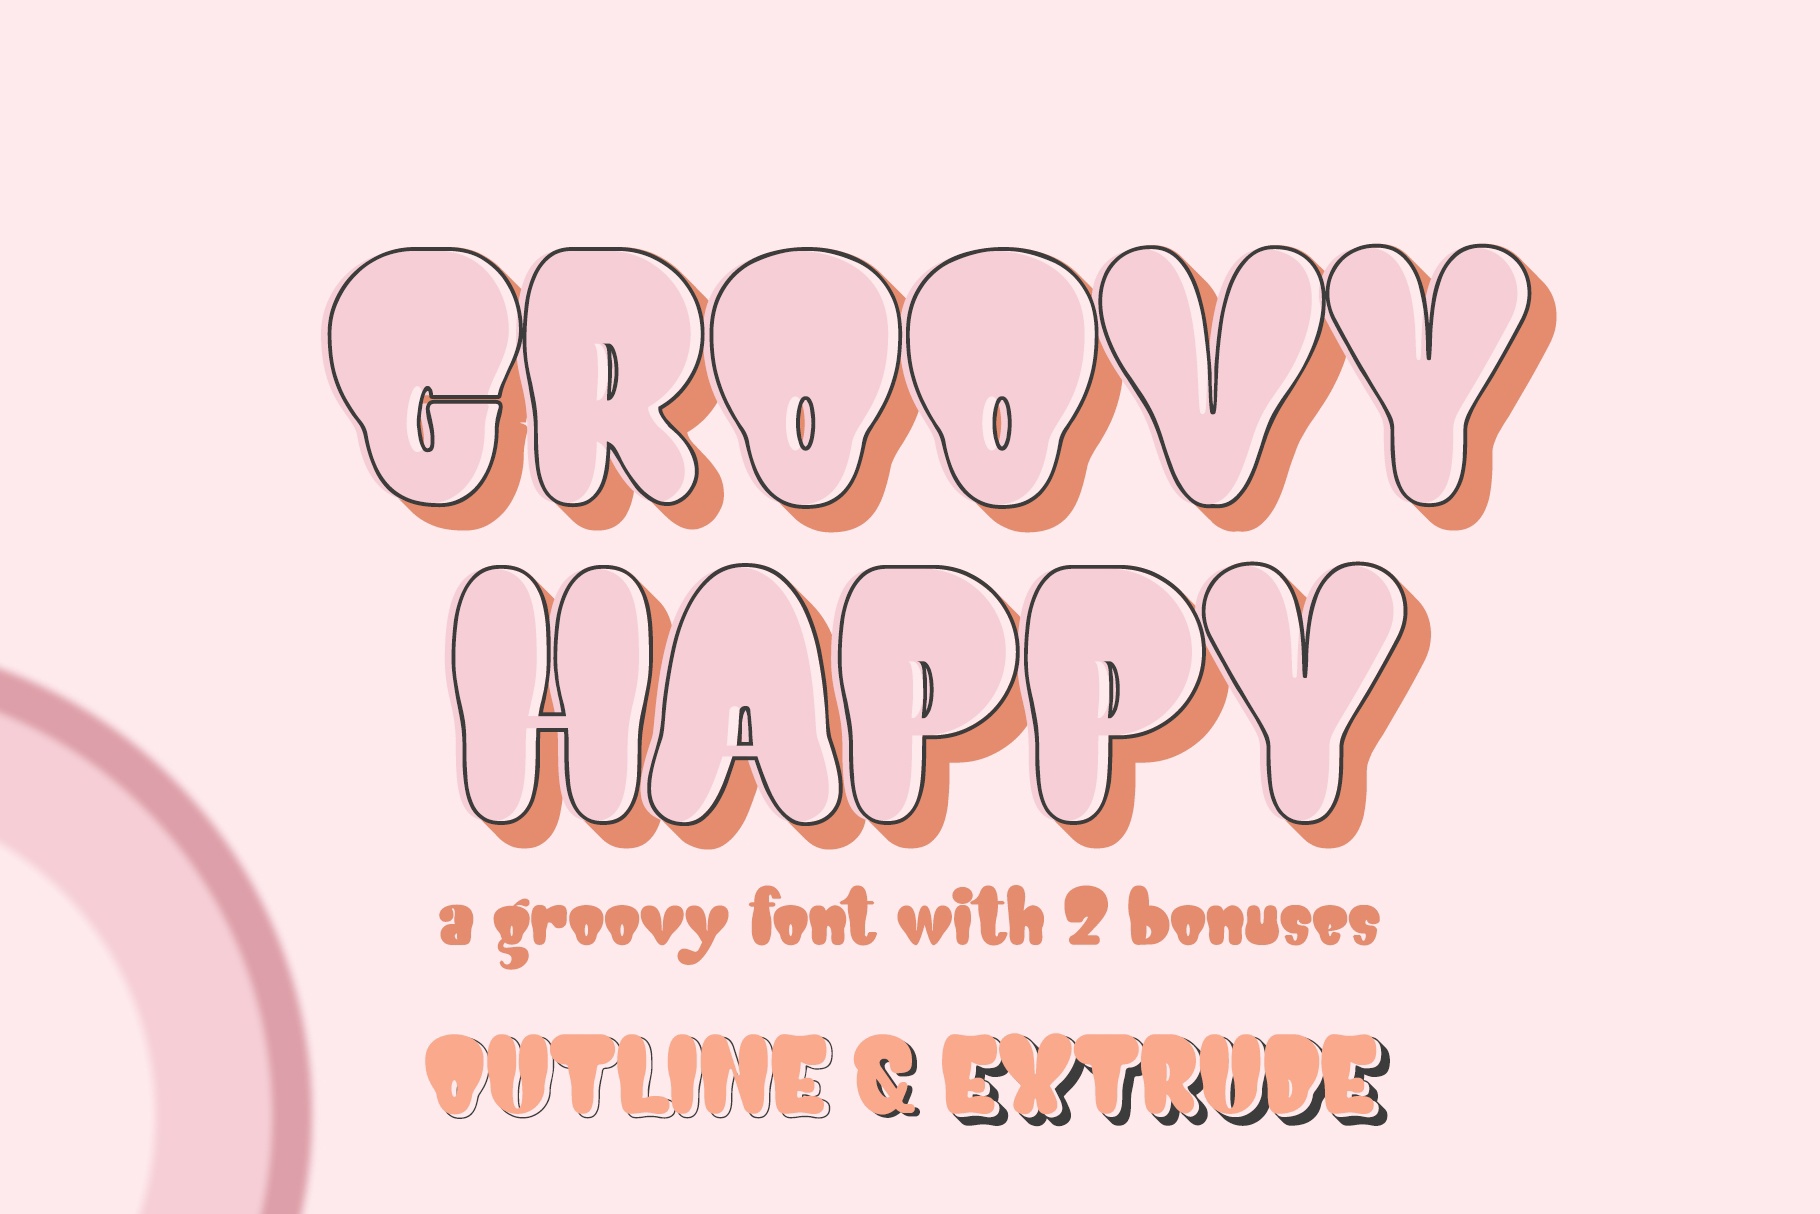 Beispiel einer Groovy Happy Regular-Schriftart